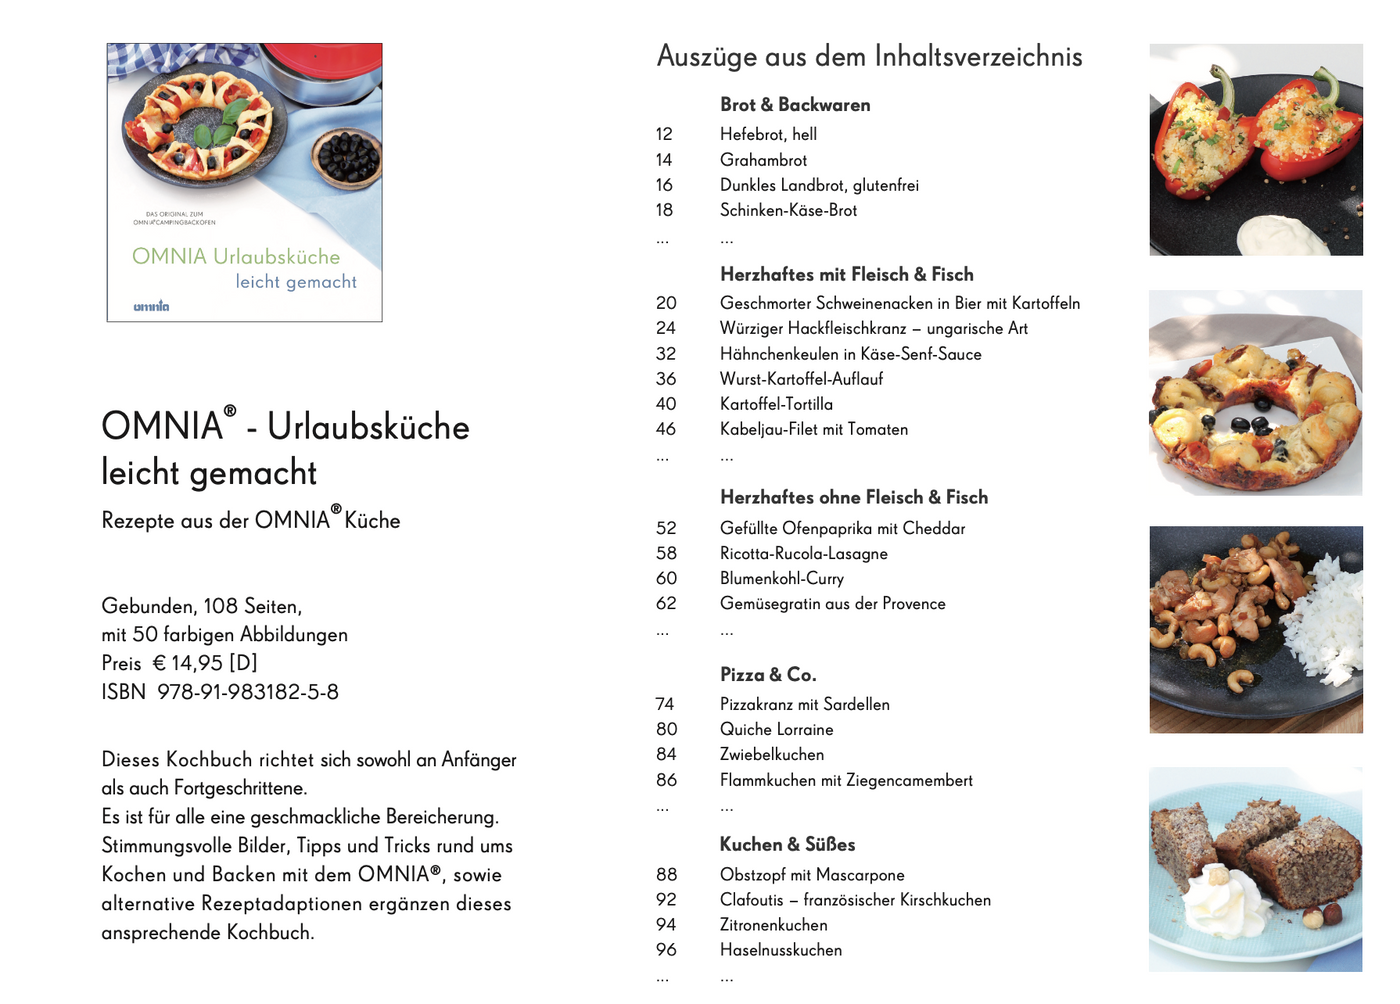 OMNIA Rezeptebuch Kochbuch "Urlaubsküche, leicht gemacht"